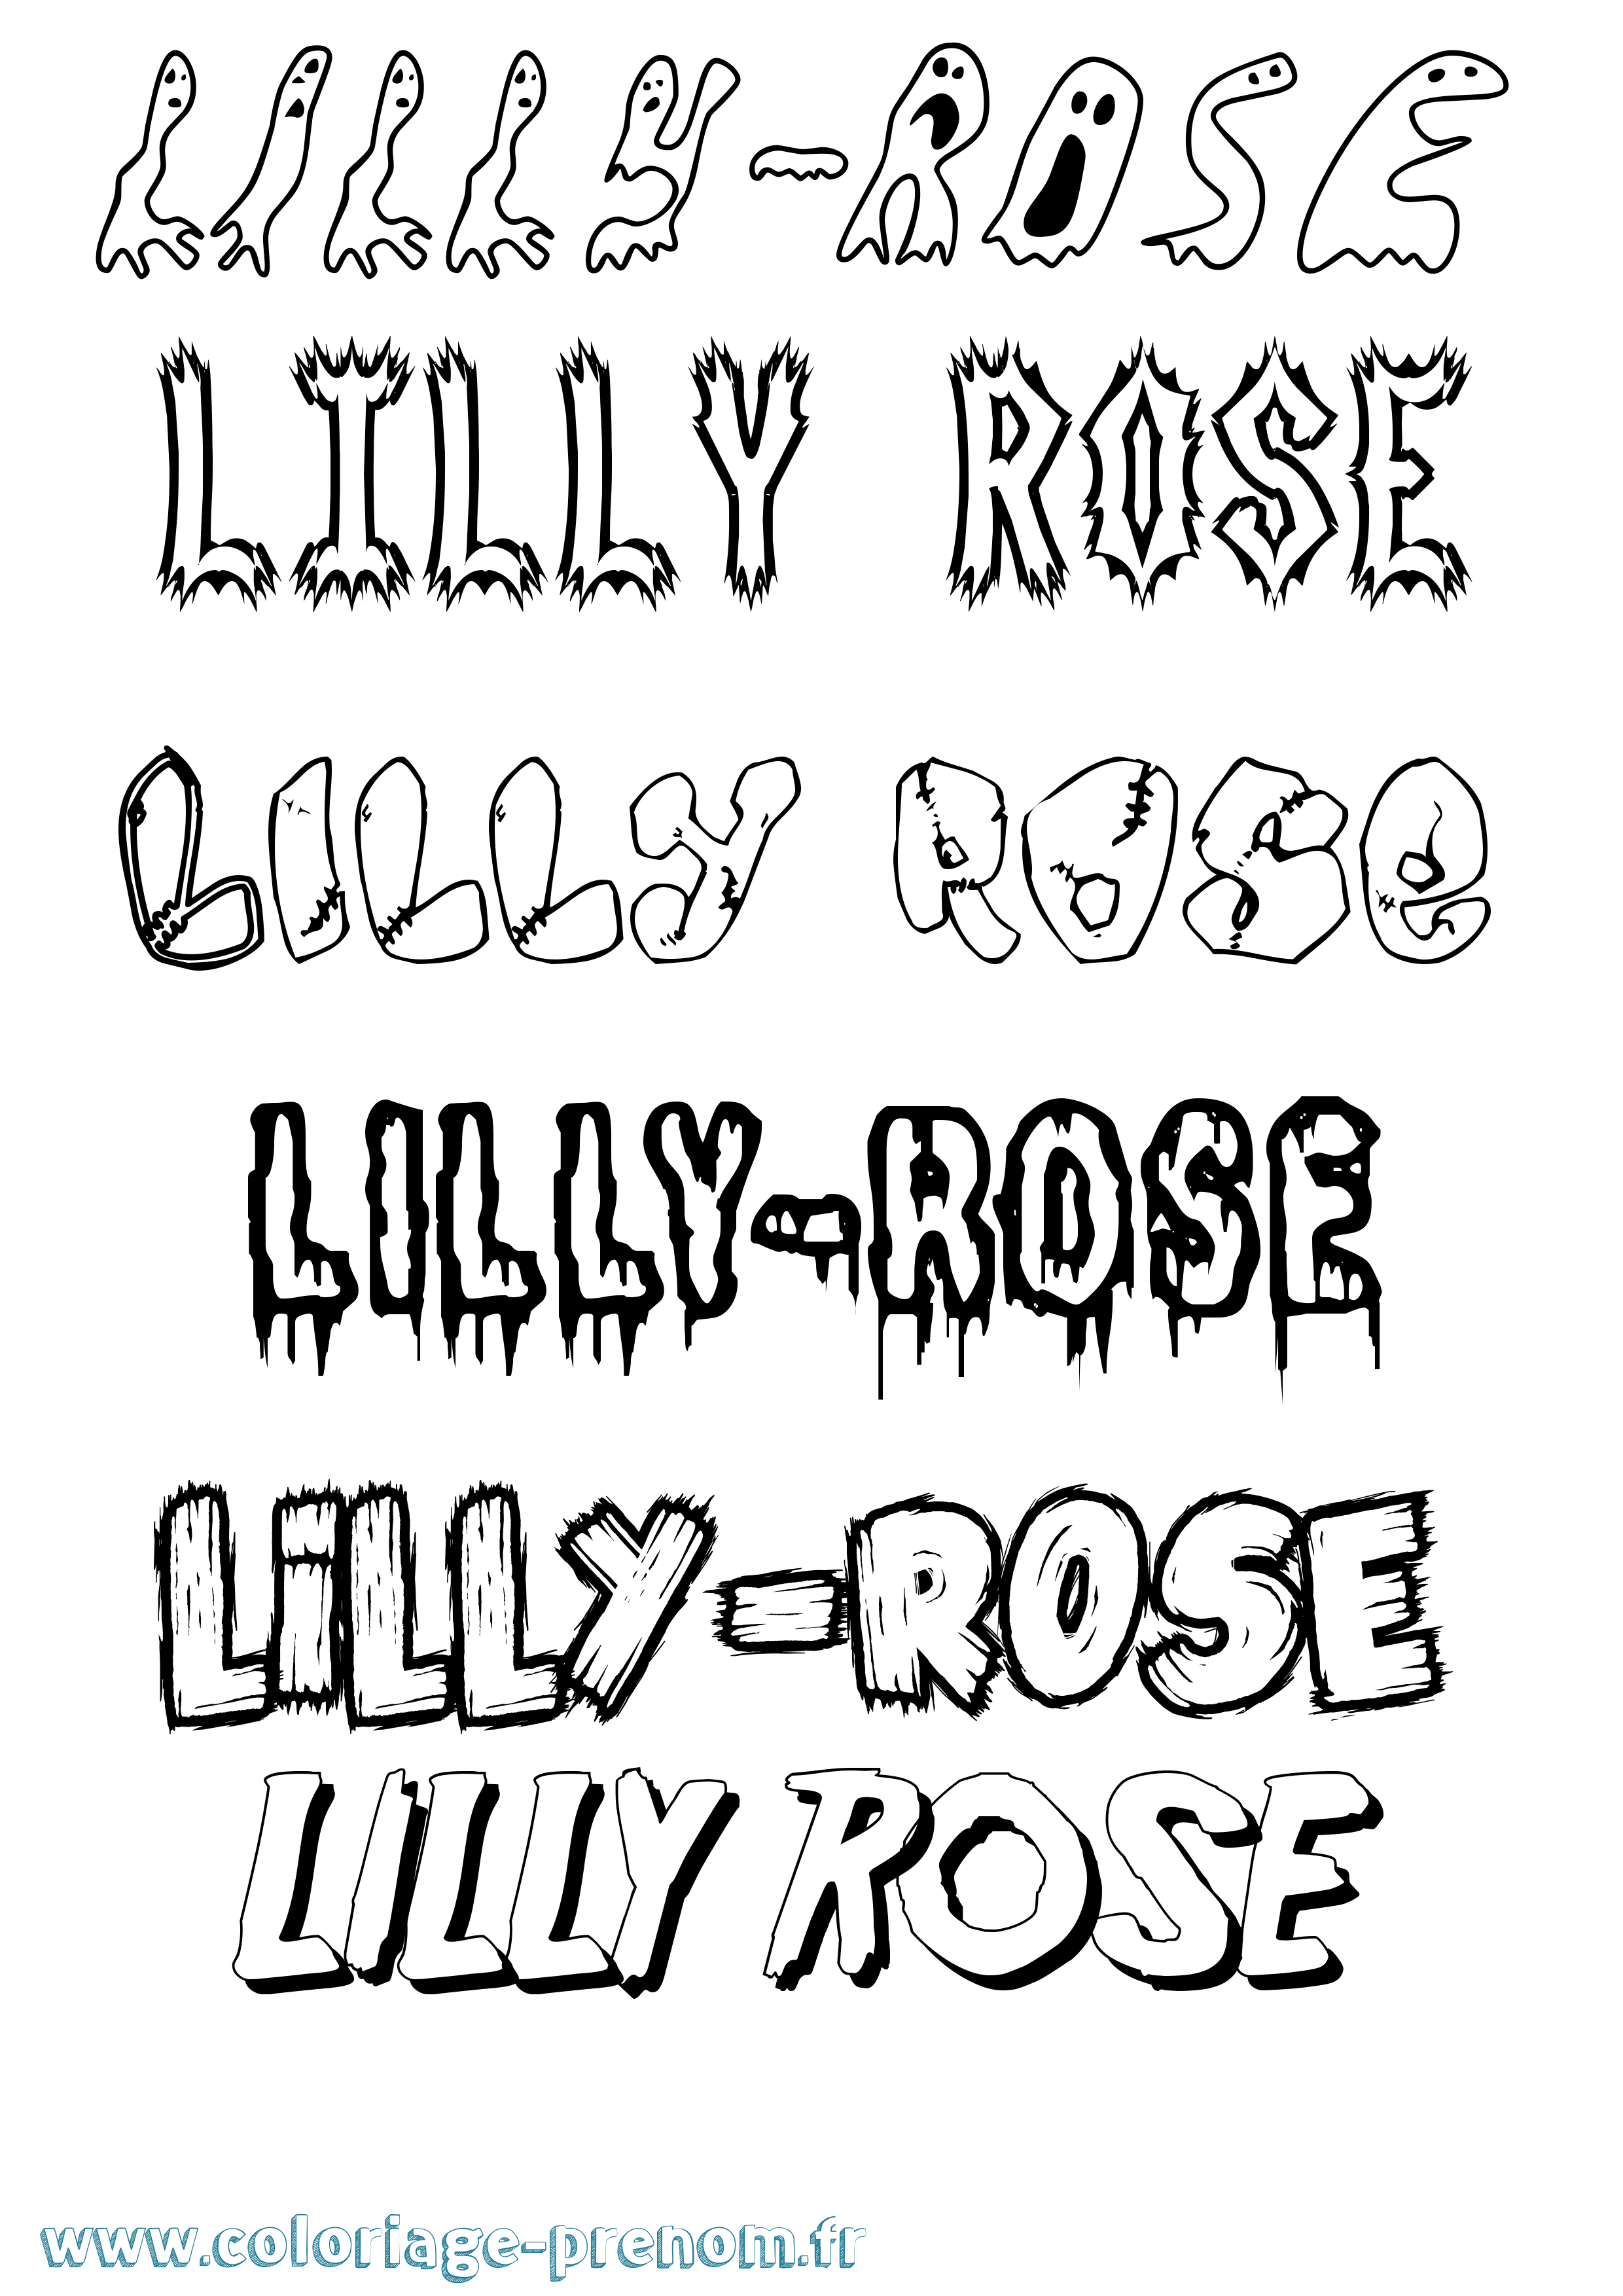 Coloriage prénom Lilly-Rose Frisson